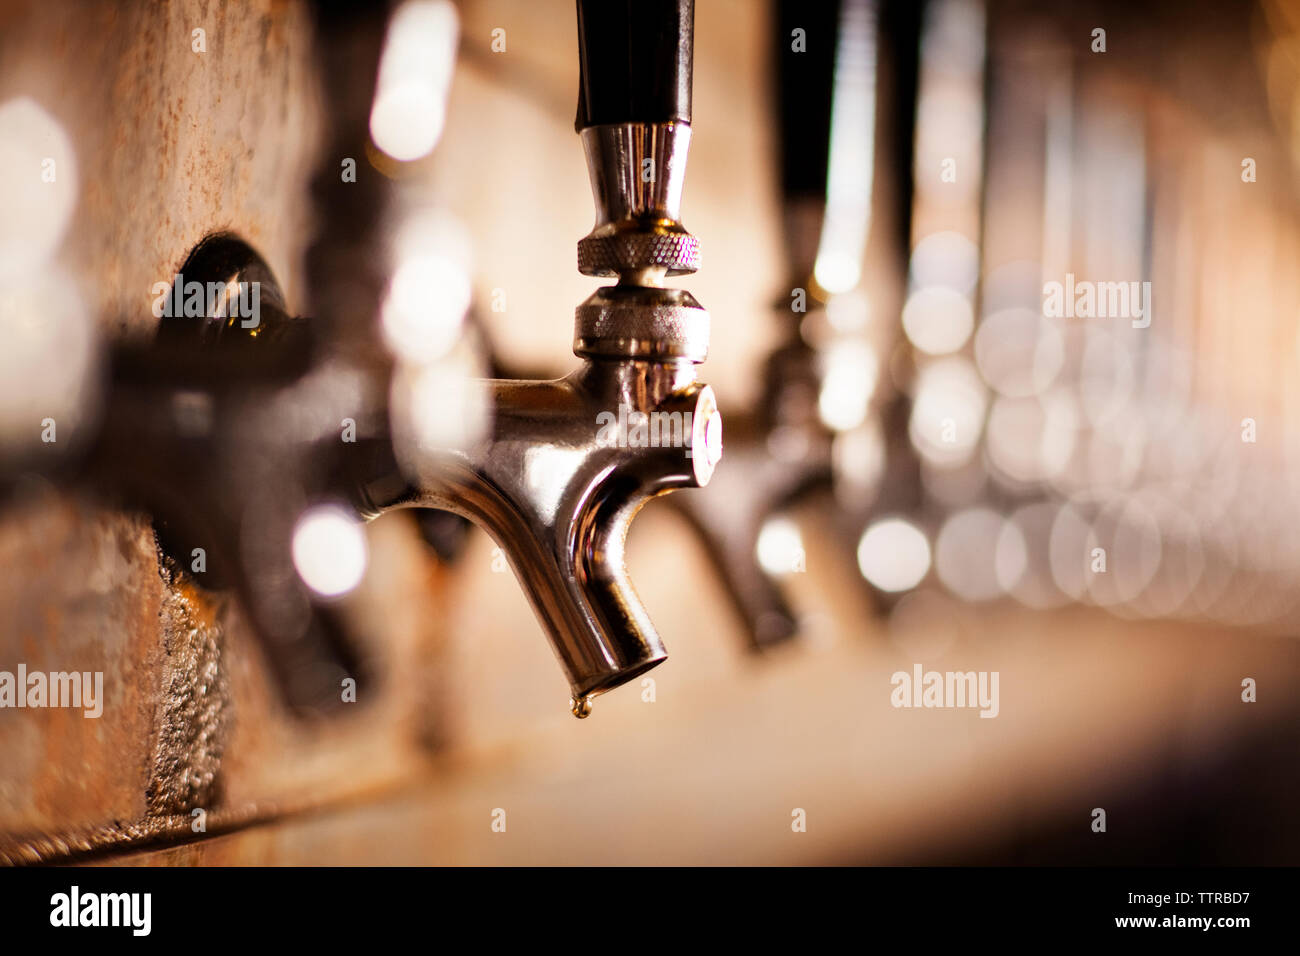 In der Nähe von metallischen Bier zapfen an der Bar Stockfoto